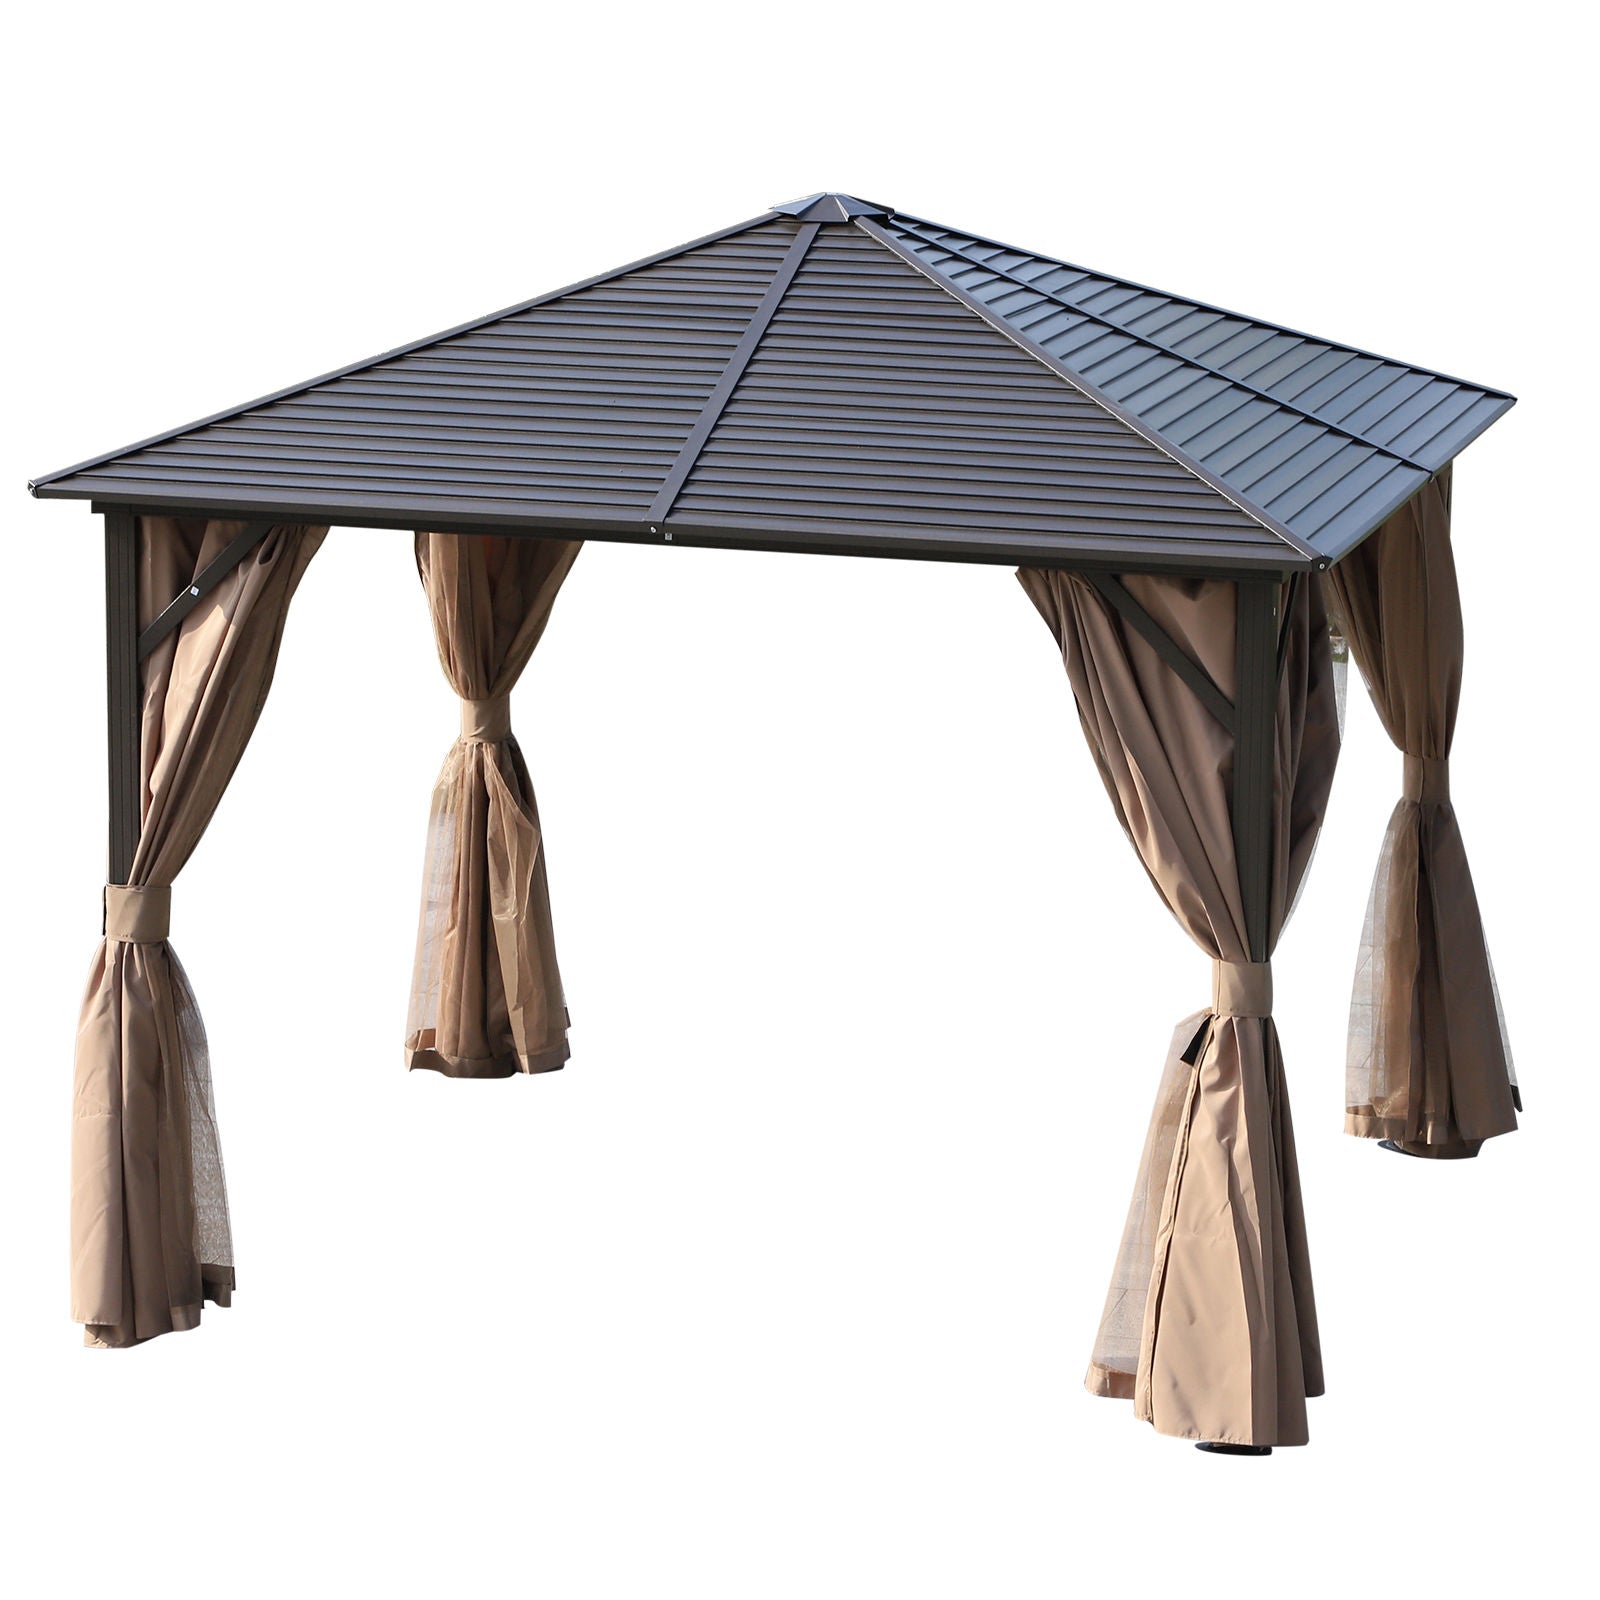 Nancy's Isabella Garden Pavilion Party Tent - Bronze, Brown - Aluminum, Steel, Polyester - 300 cm x 300 cm x 260 cm